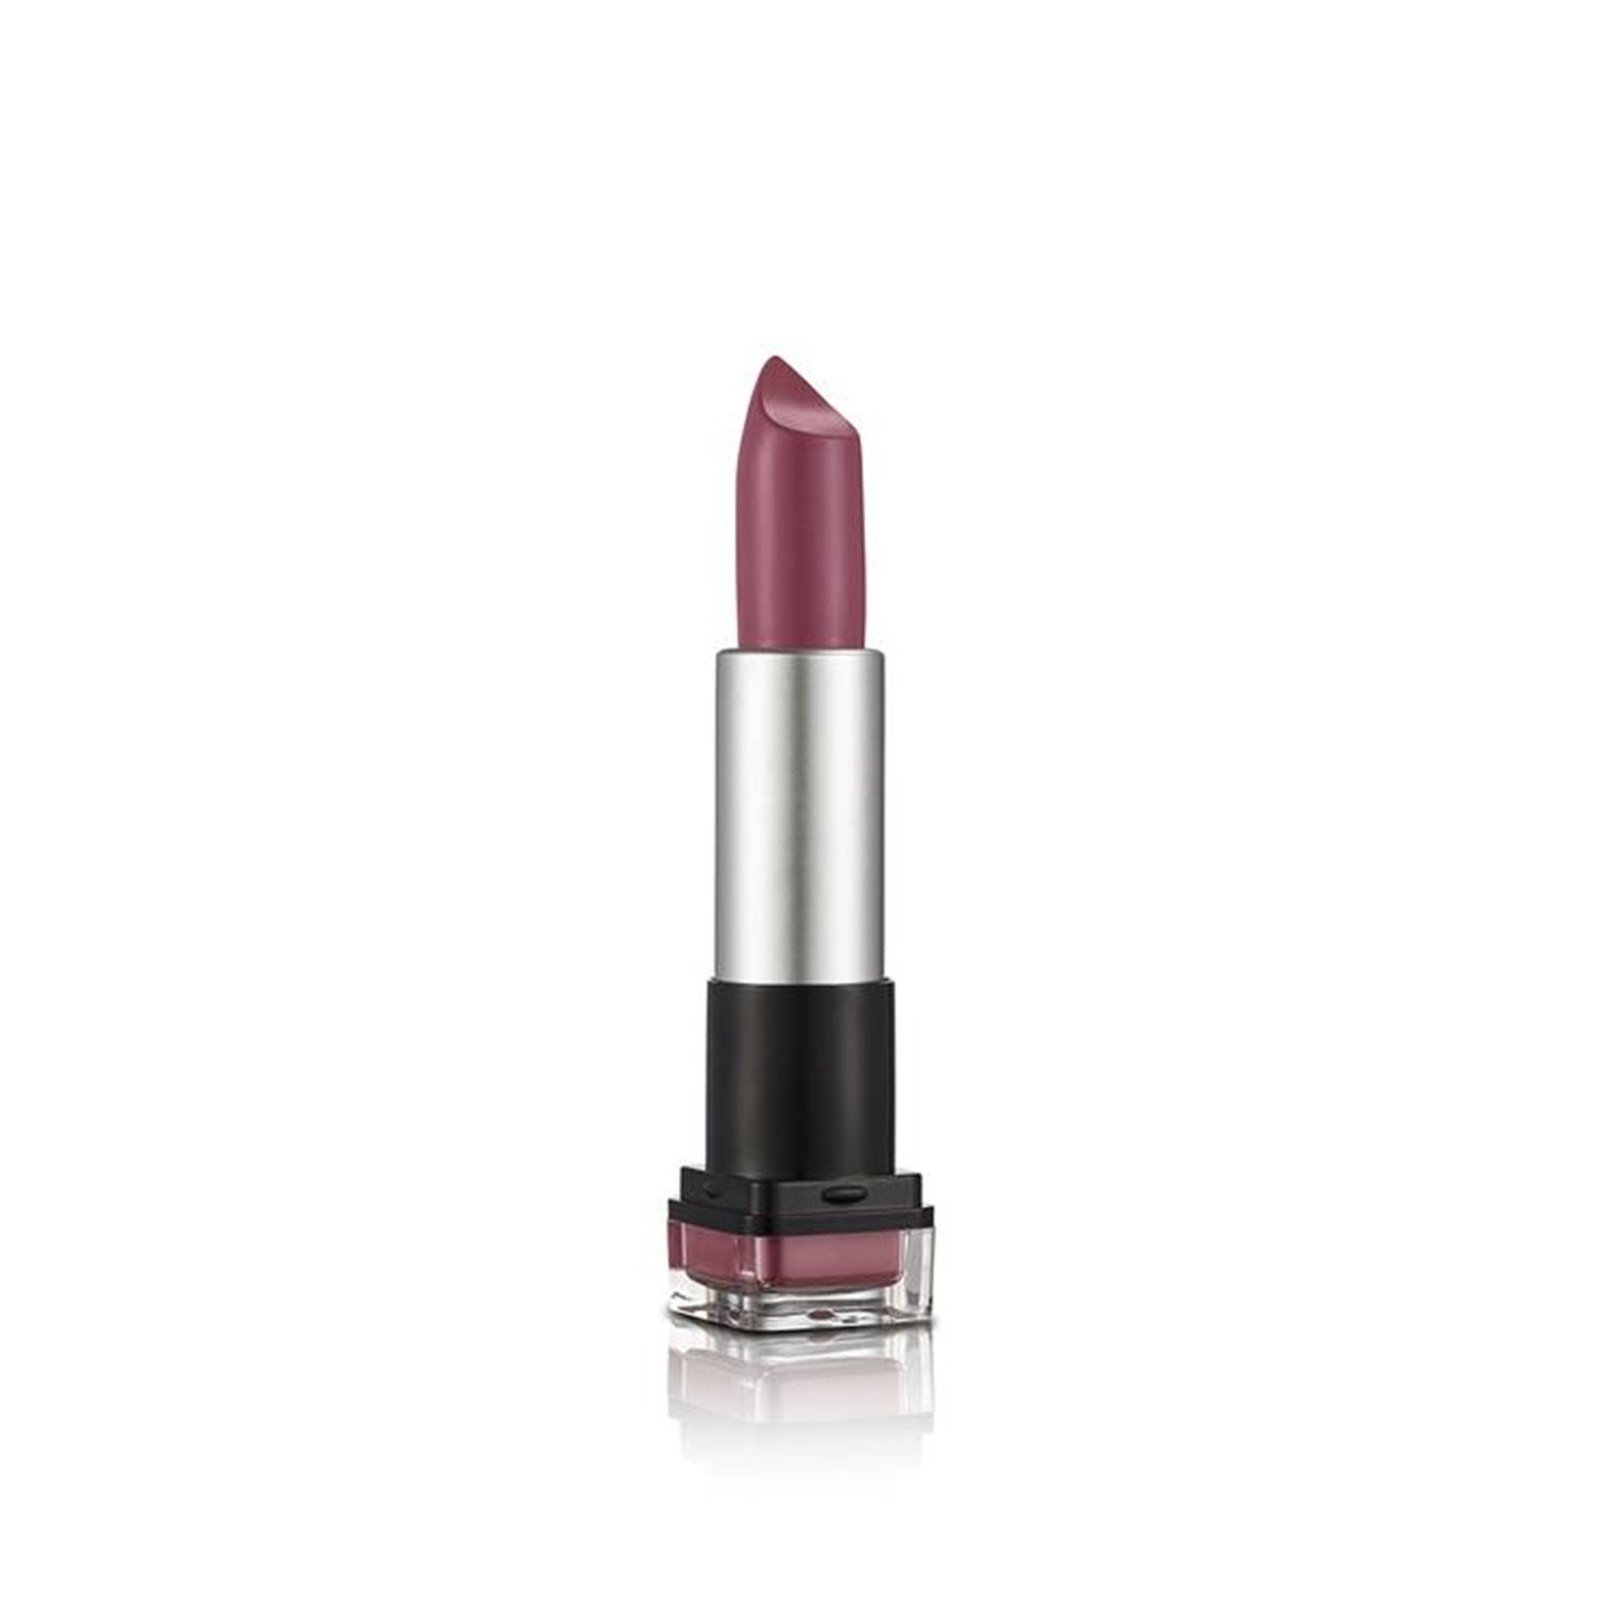 Flormar HD Weightless Matte Lipstick 19 Millenial Pink 4g